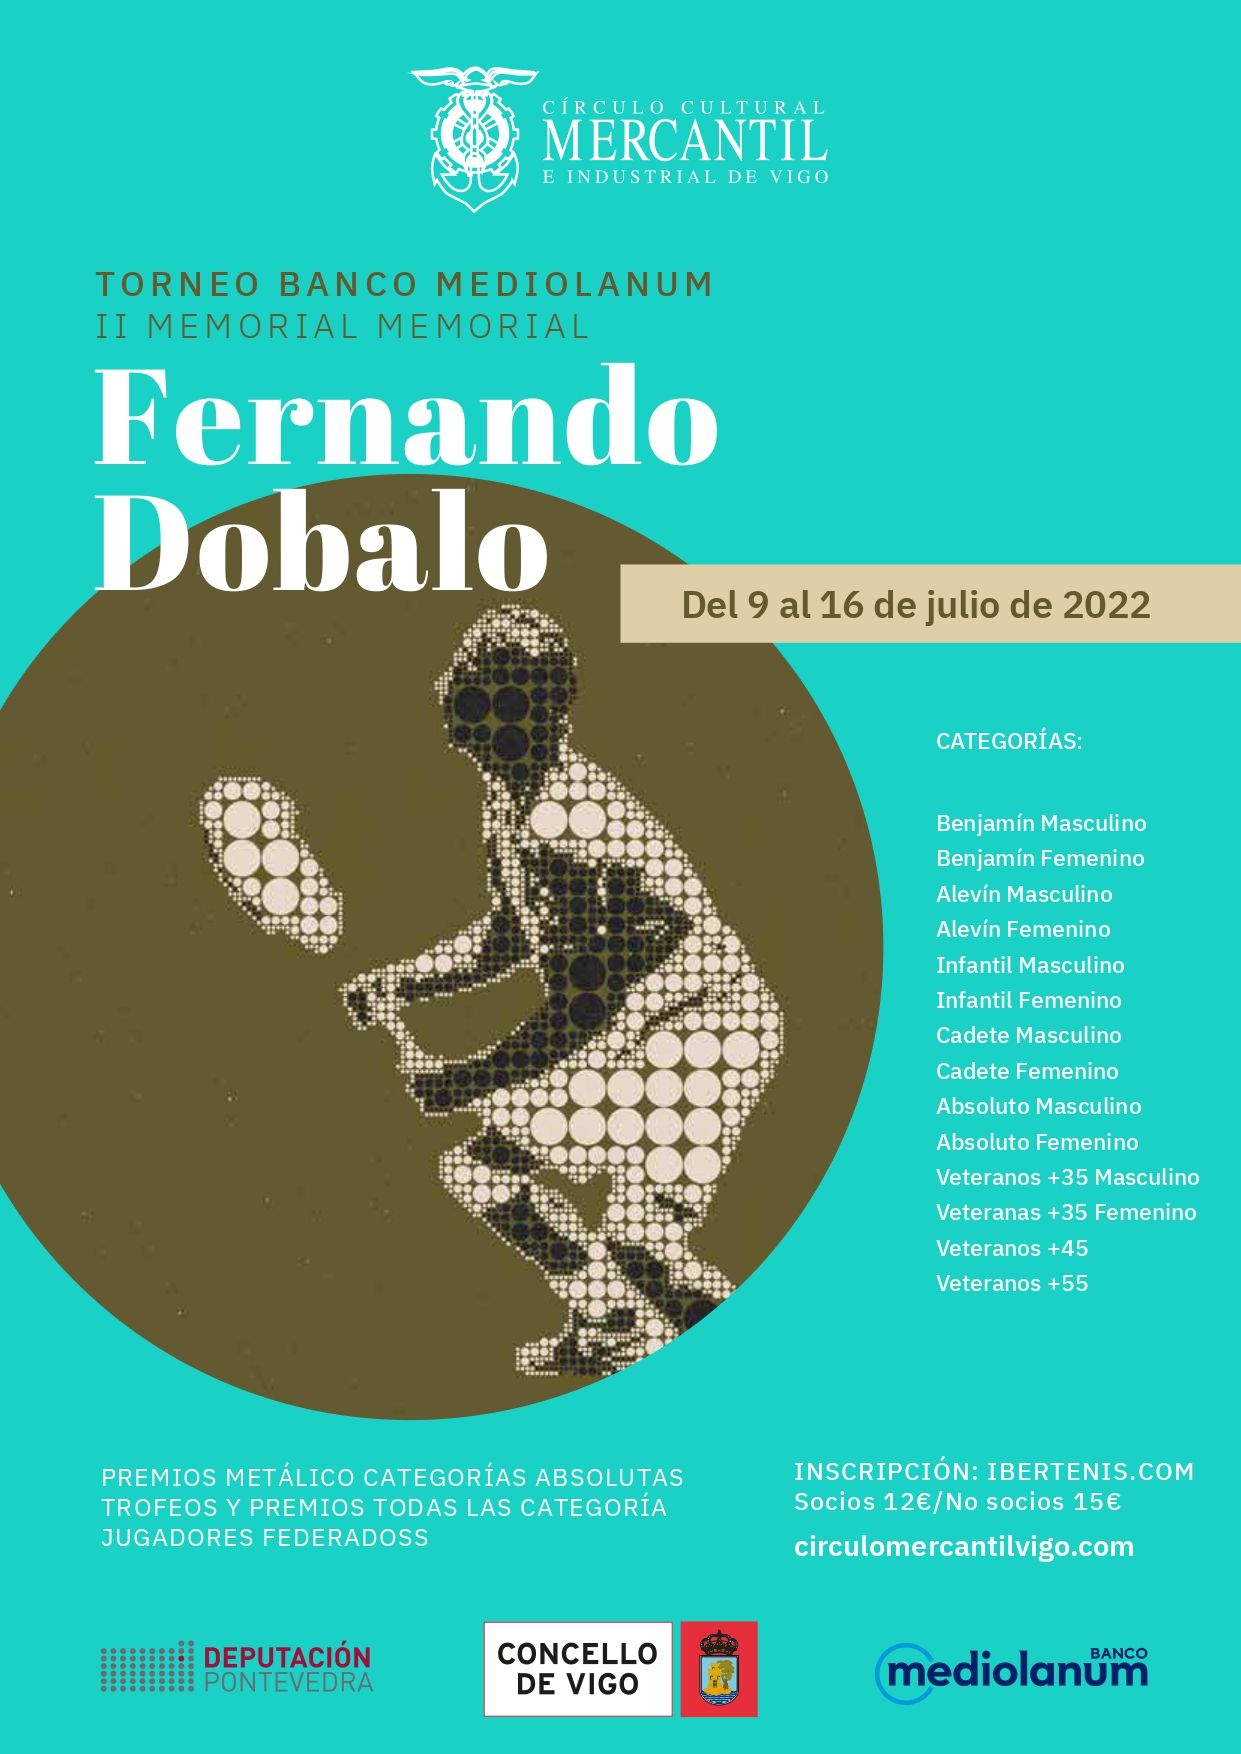 Torneo de Tenis Banco Mediolanum. II memorial Fernando Dobalo